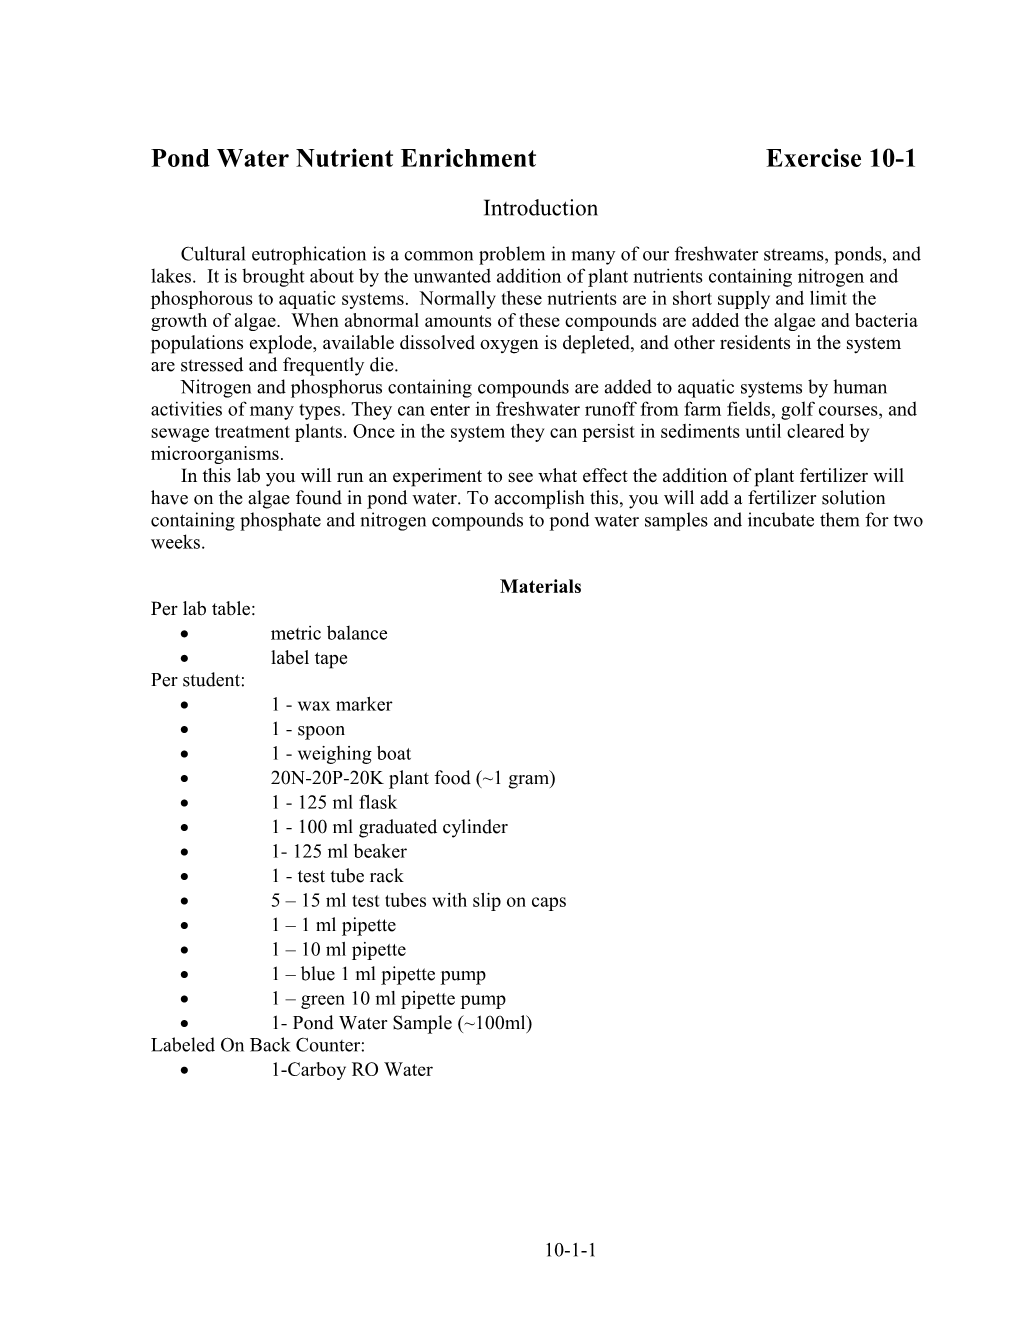 Pond Water Nutrient Enrichmentexercise 10-1